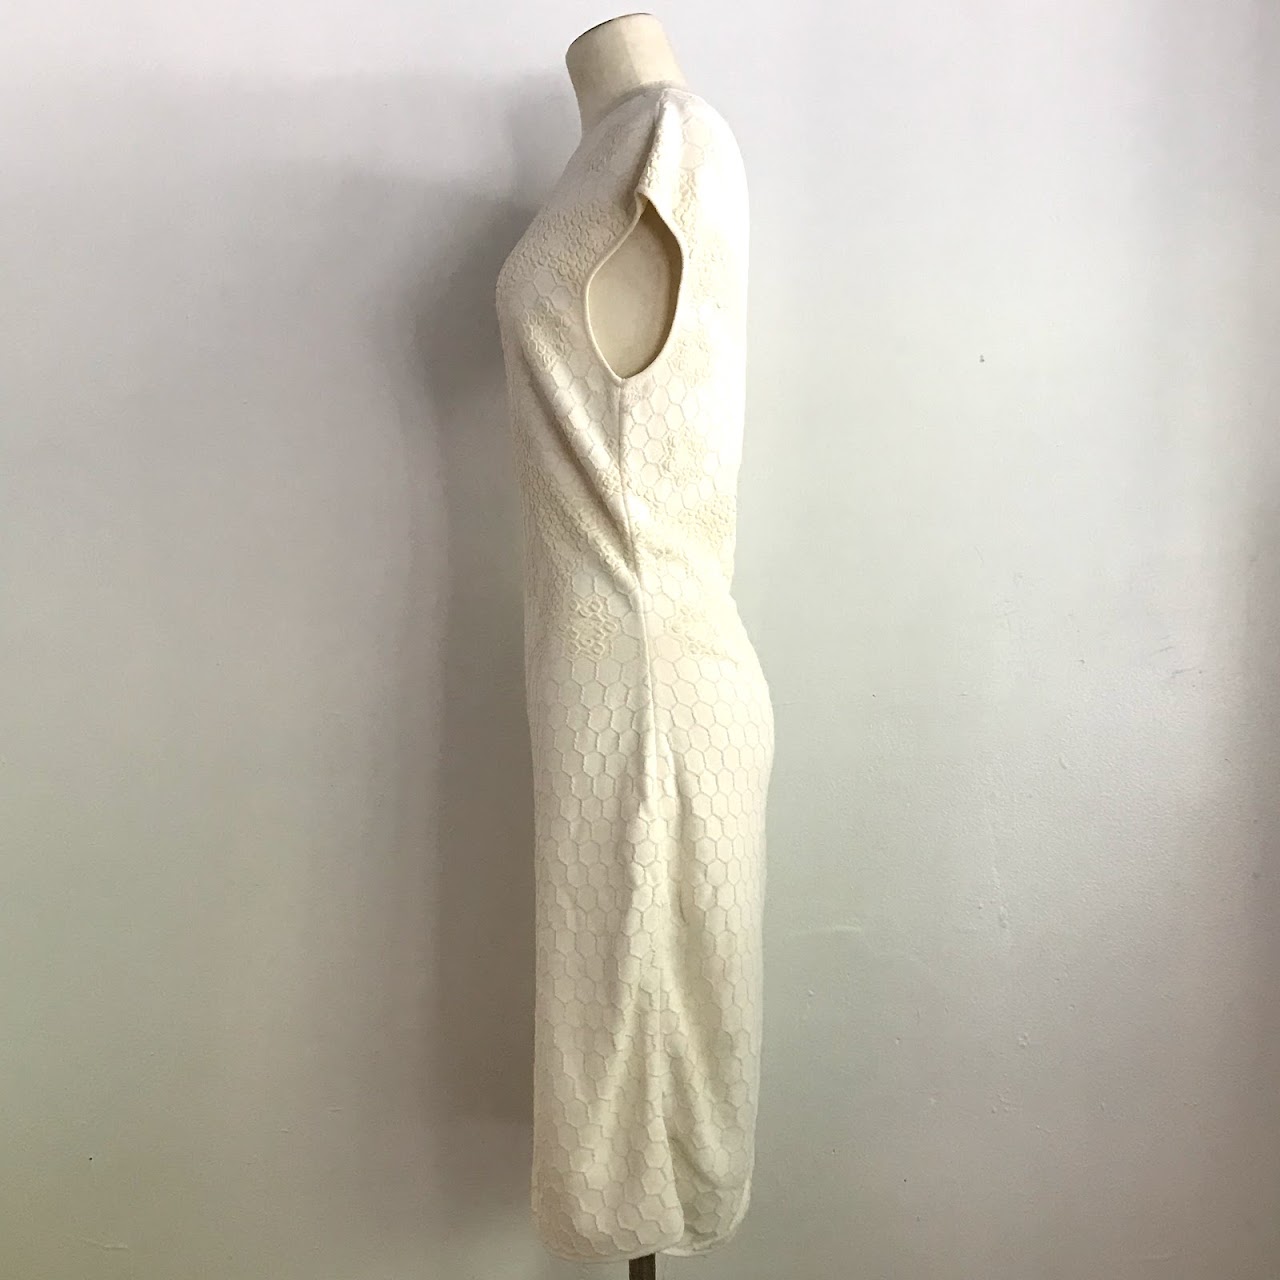 Alexander McQueen Honeycomb Knit Dress